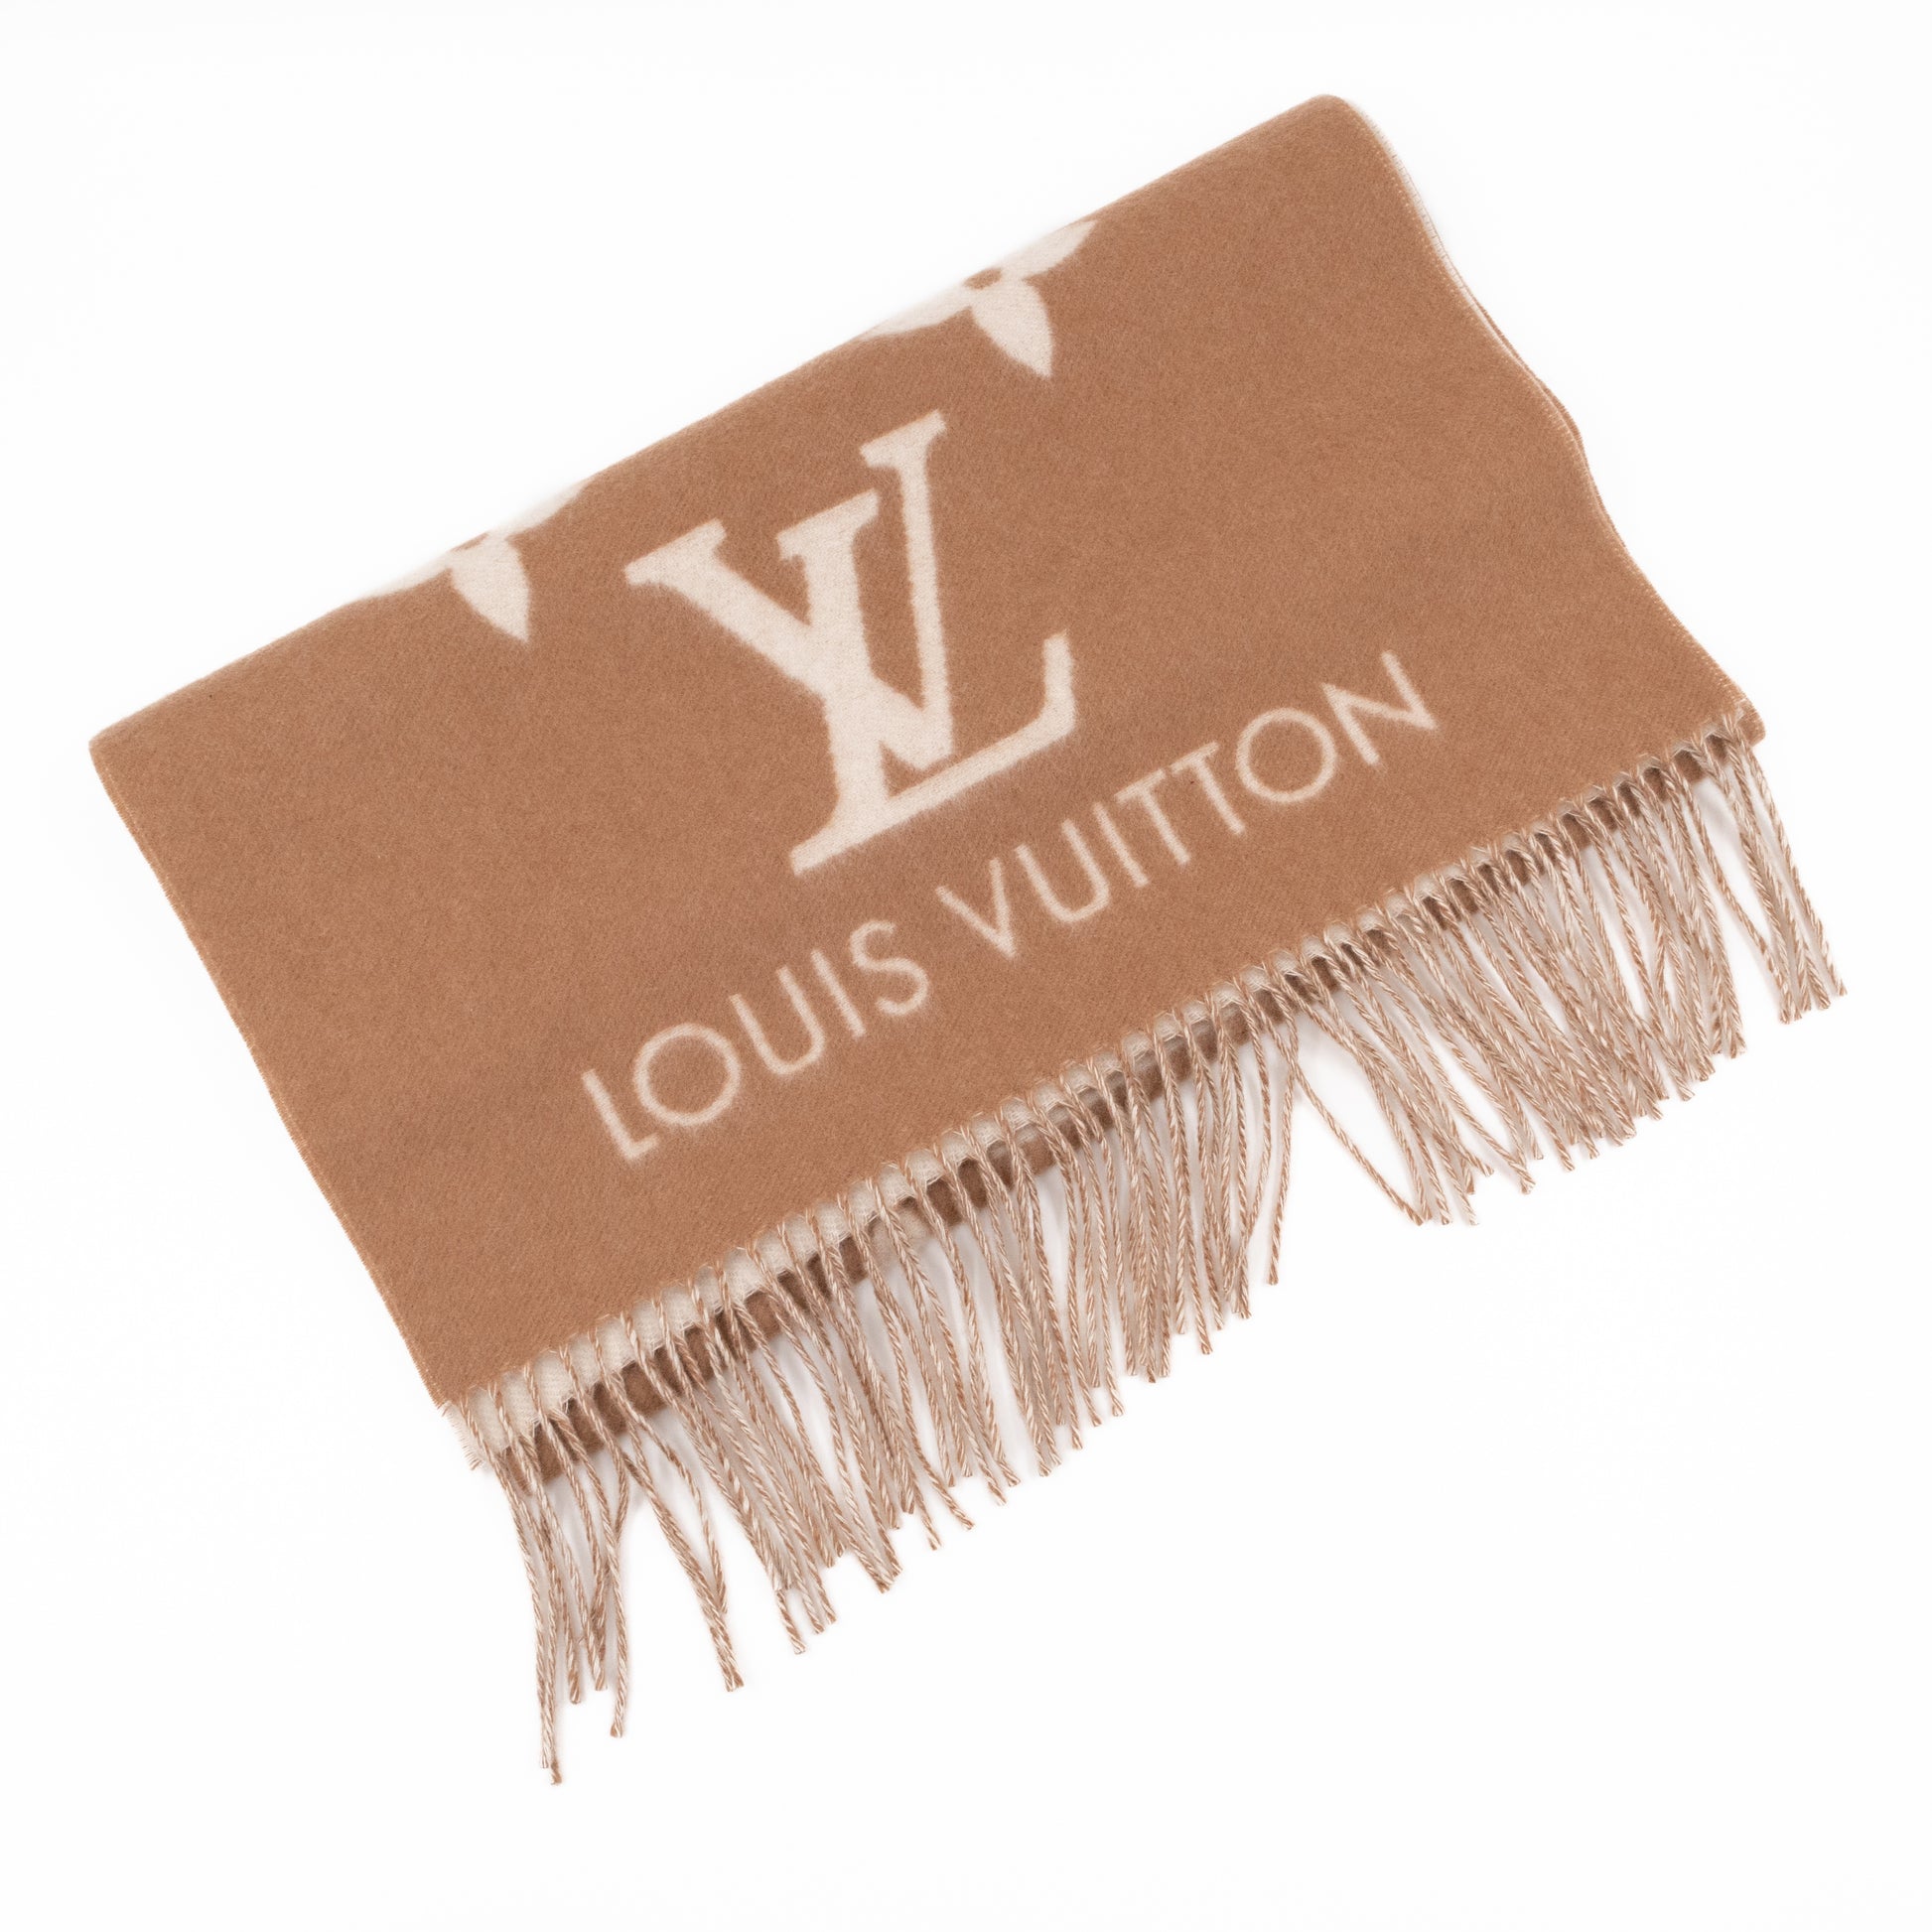 Louis Vuitton Reykjavik Scarf (brown)